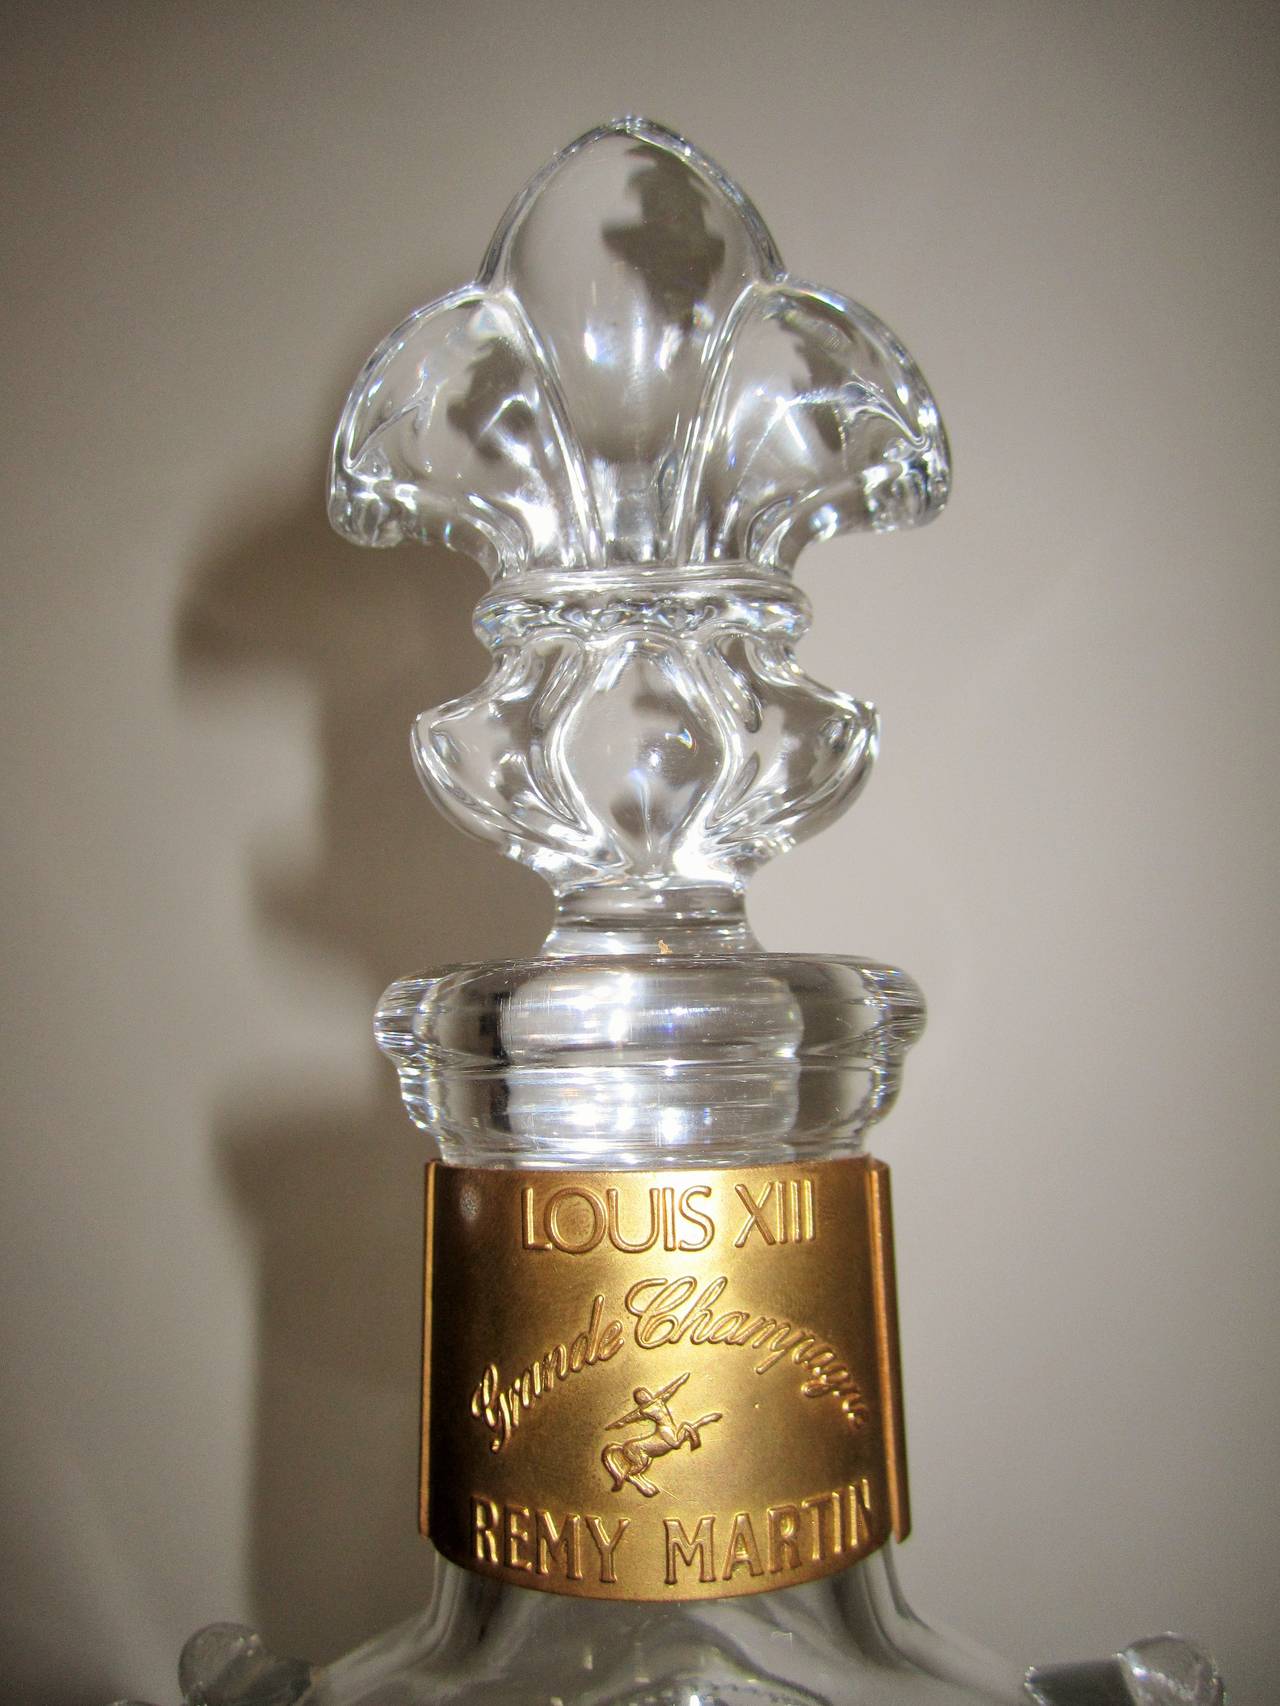 Français Vintage Baccarat Crystal Glass Louis XIII Cognac Decanter Set